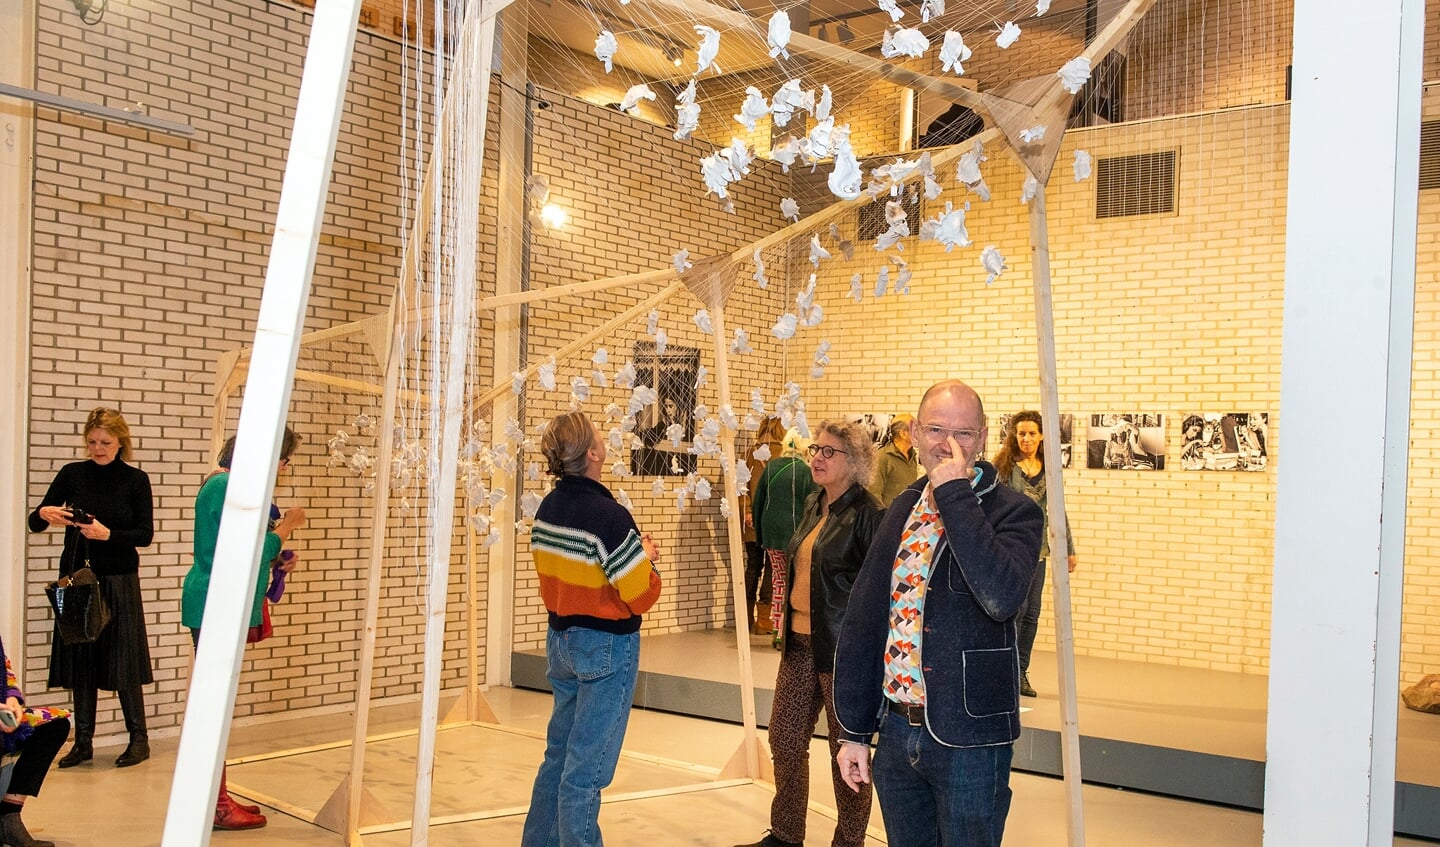 Opening 
expositie Onbereikbare Liefde
in Rietveld Paviljoen door wethouder Tyas Bijlholt